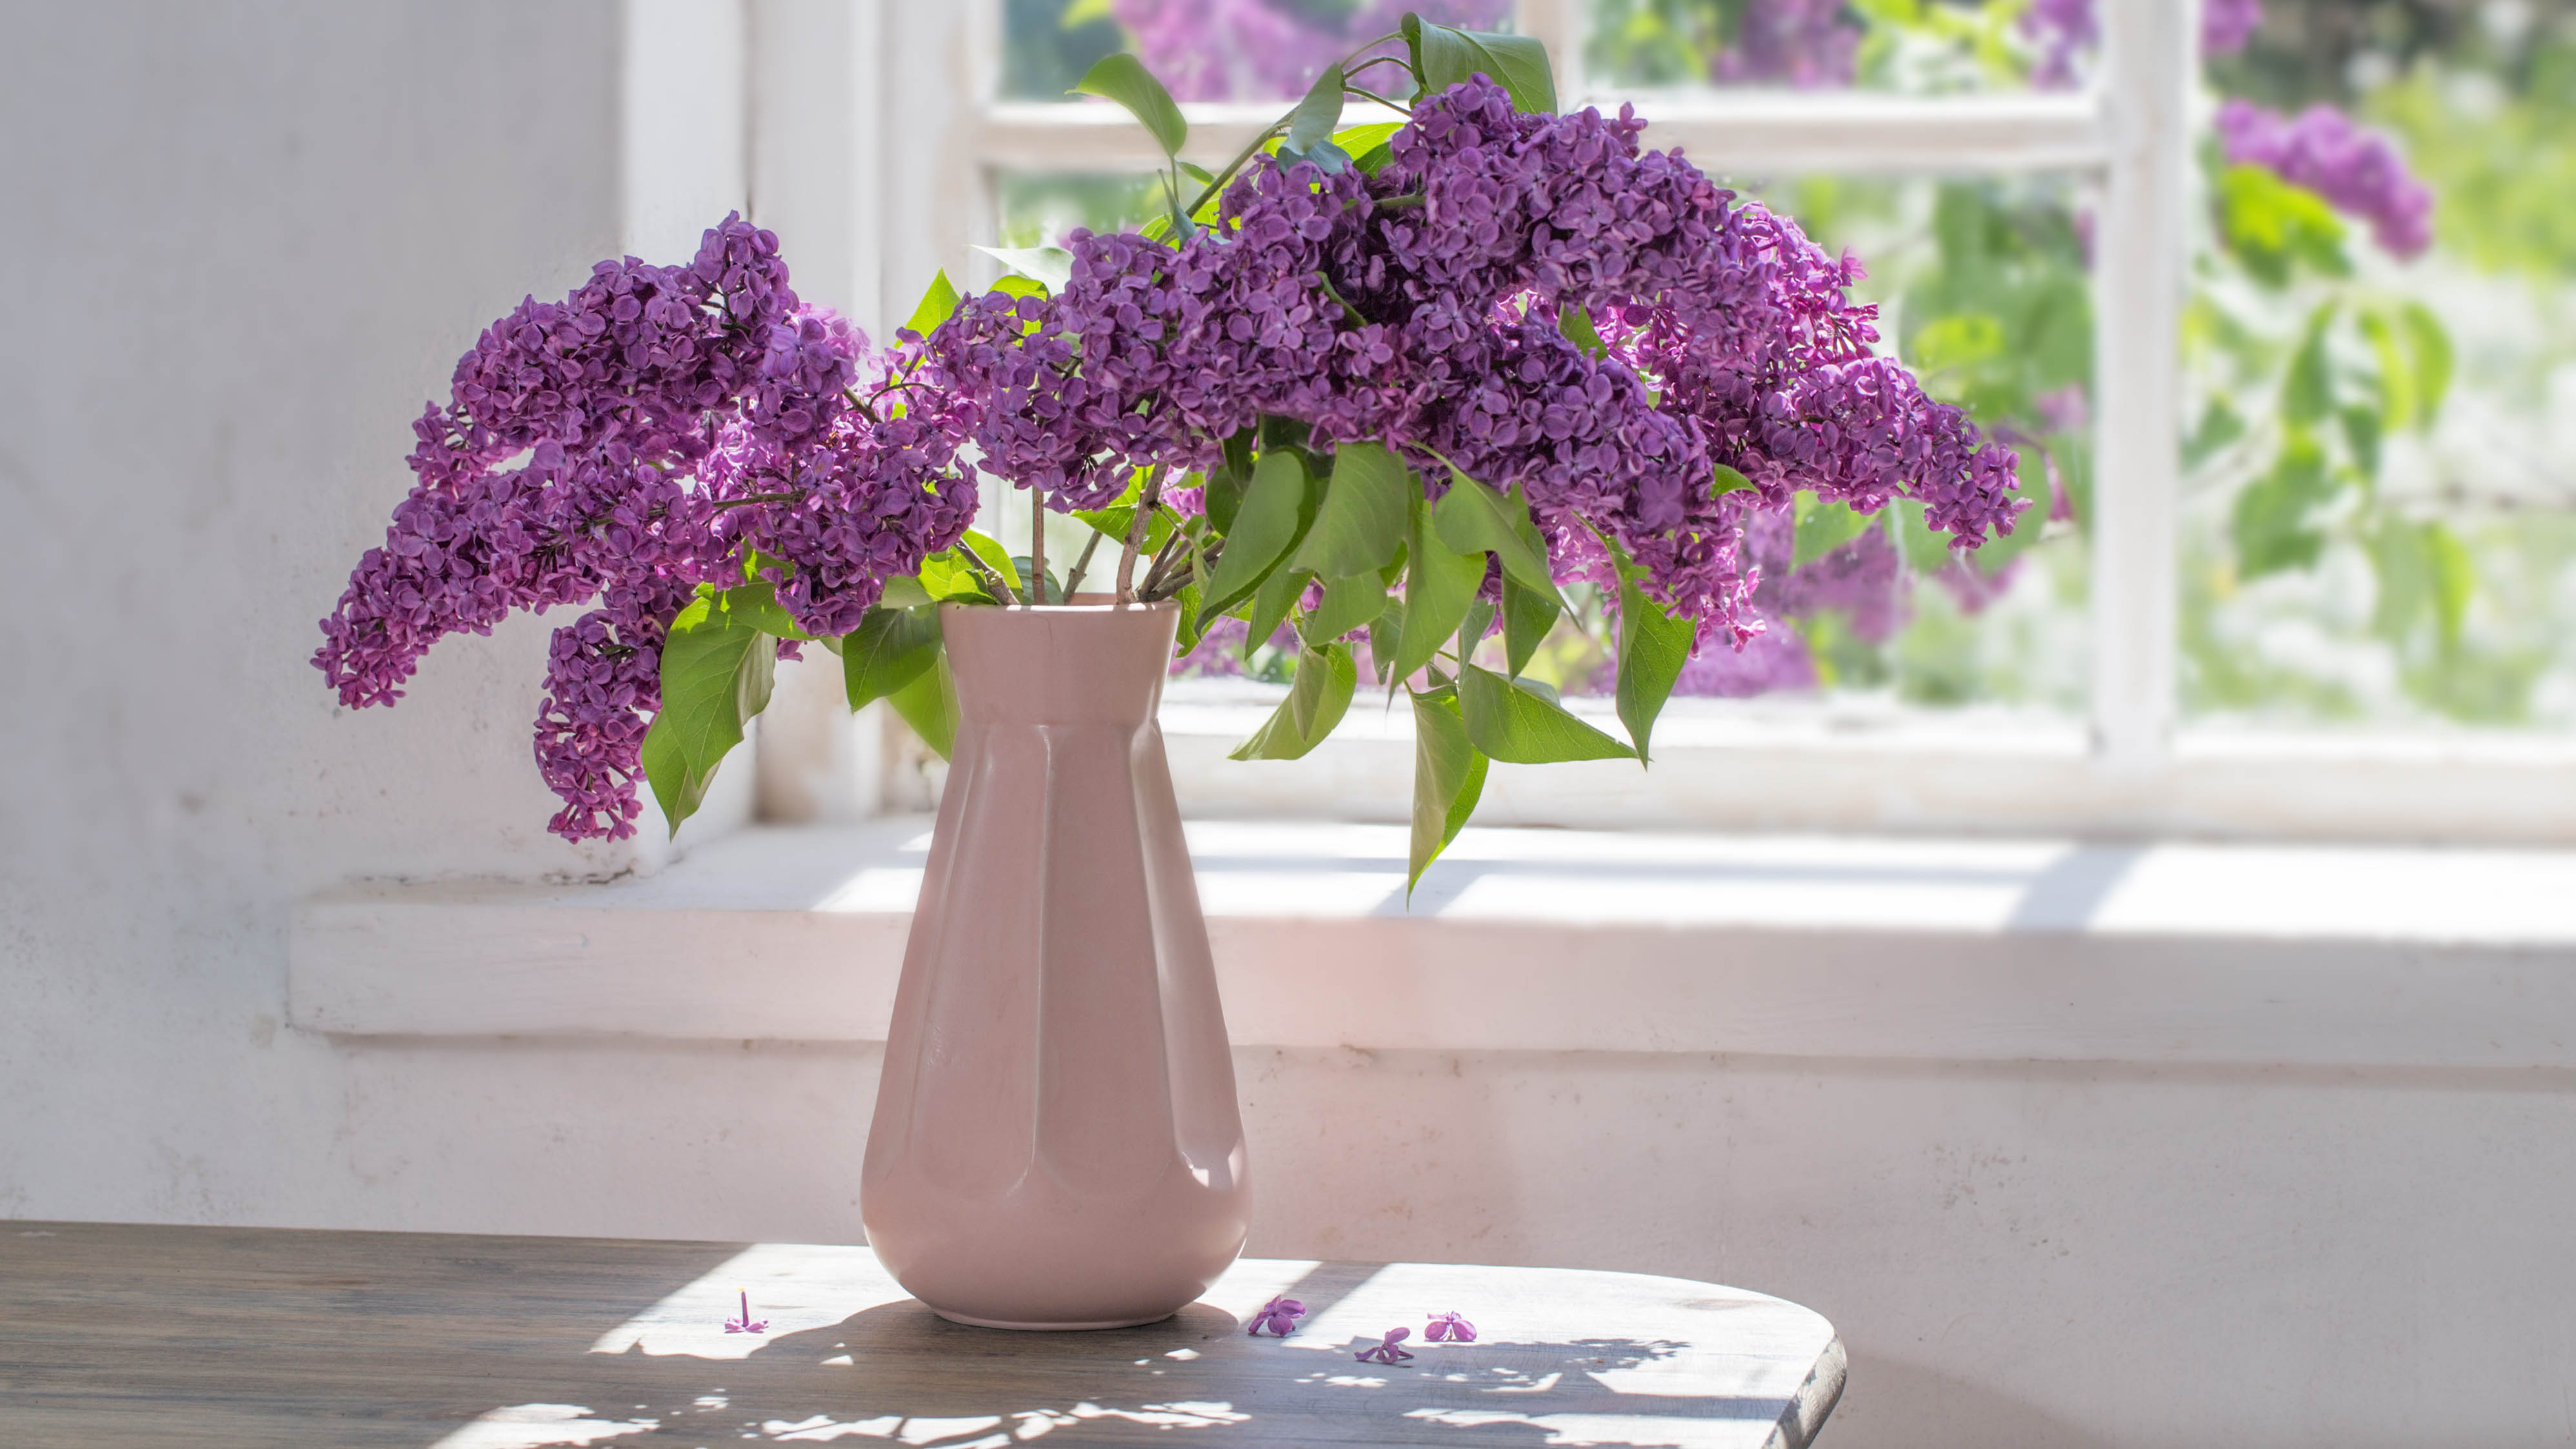 Небольшая ваза с цветами рядом с окном под прямыми солнечными лучами